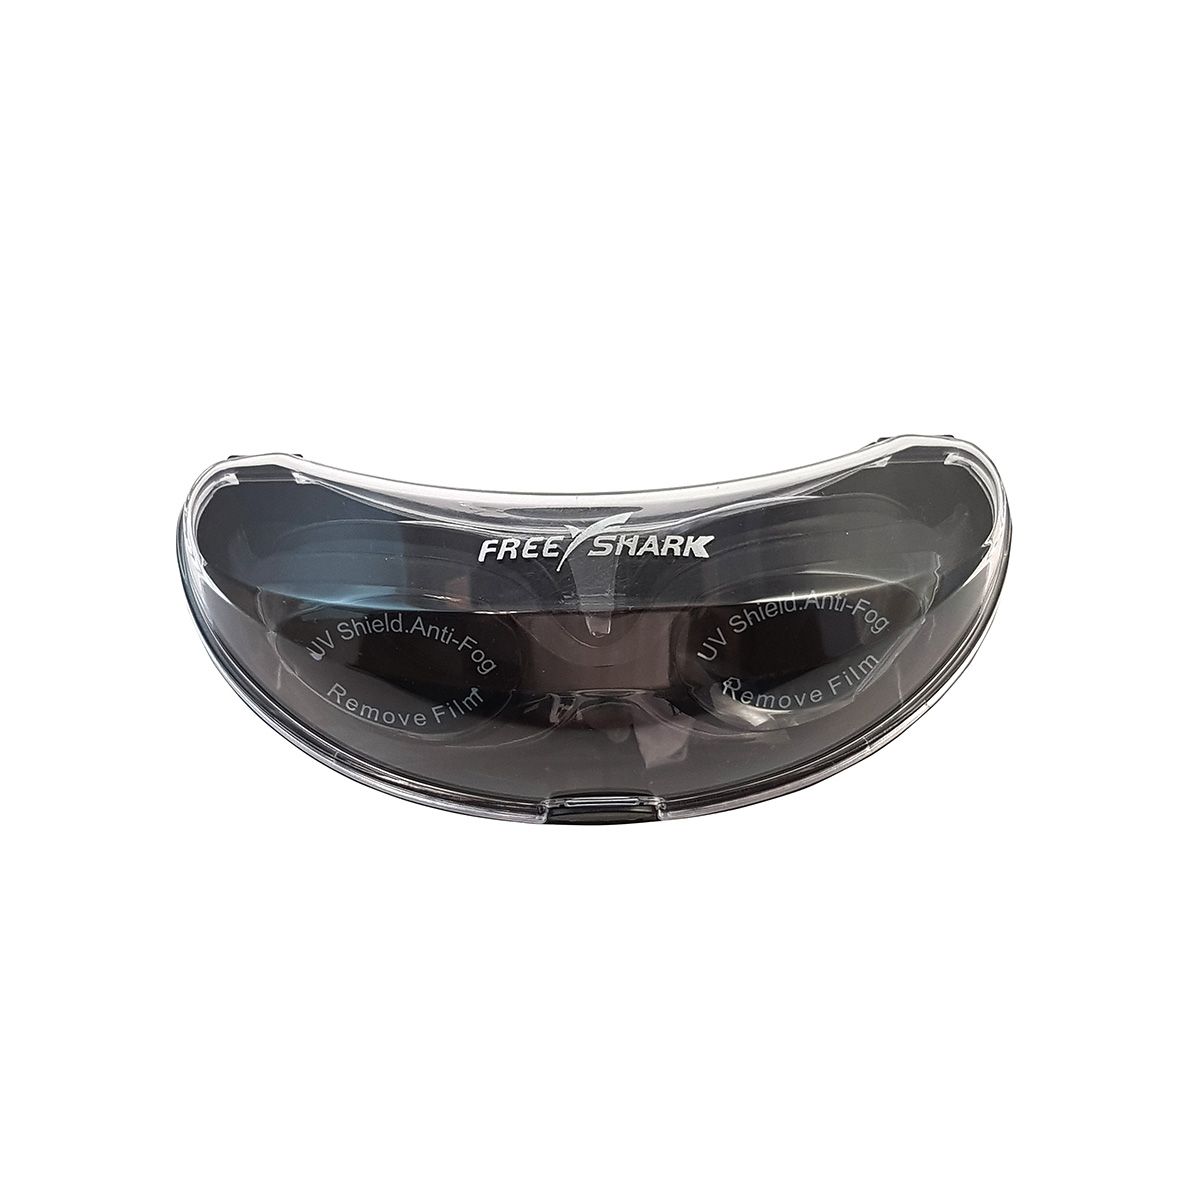  عینک شنا فری شارک مدل YG-2300 -  - 14